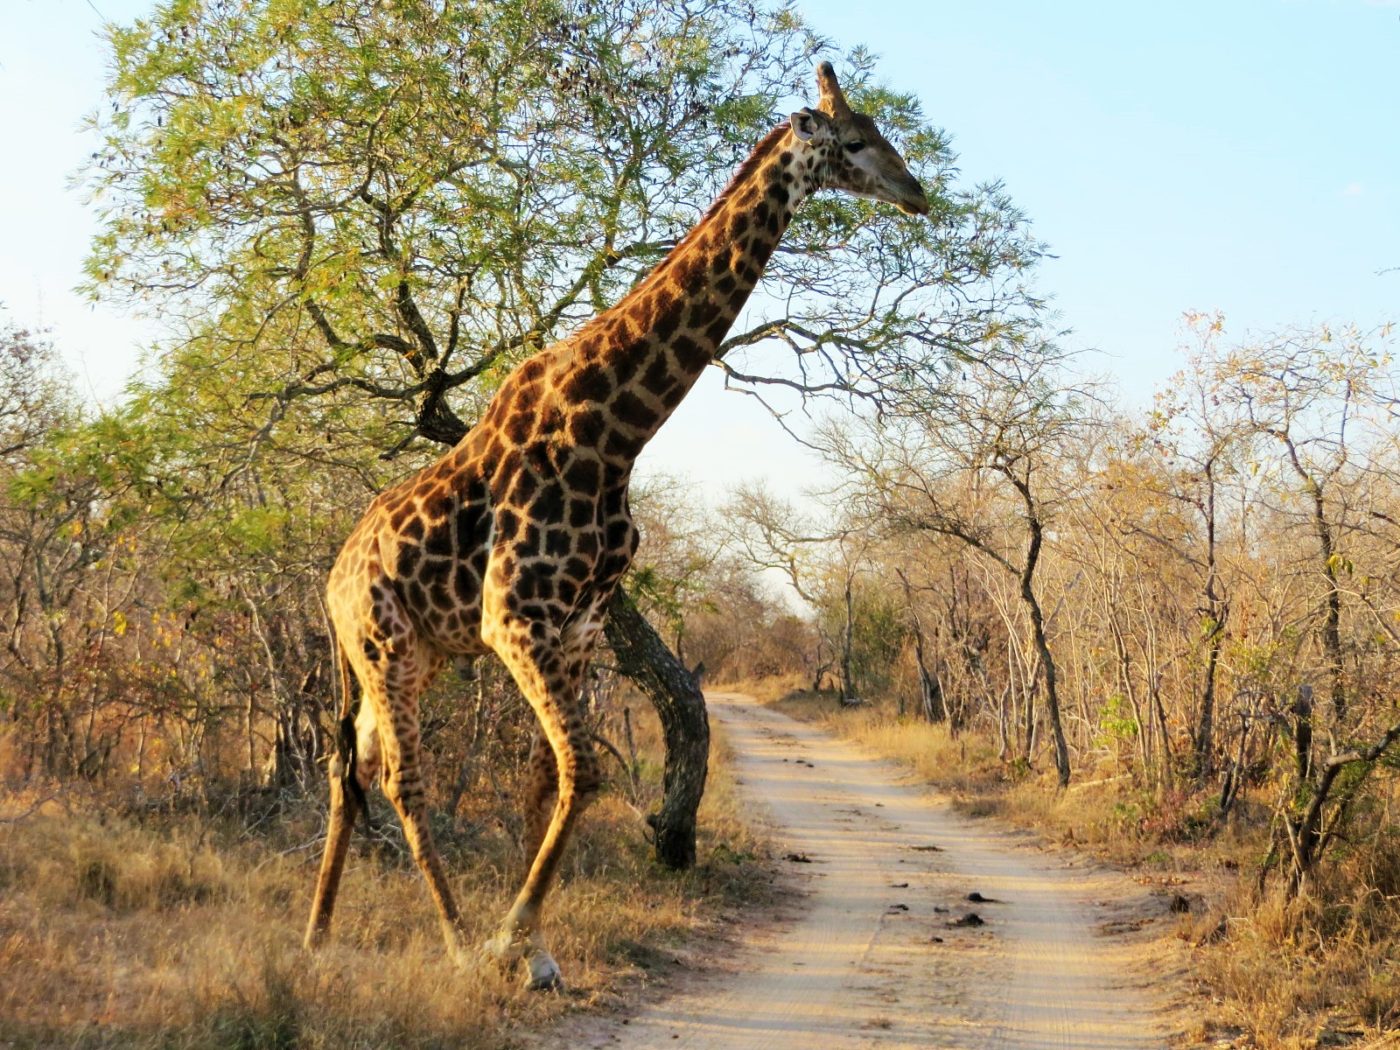 Girafa atravessando a estrada no sáfari no Kruger